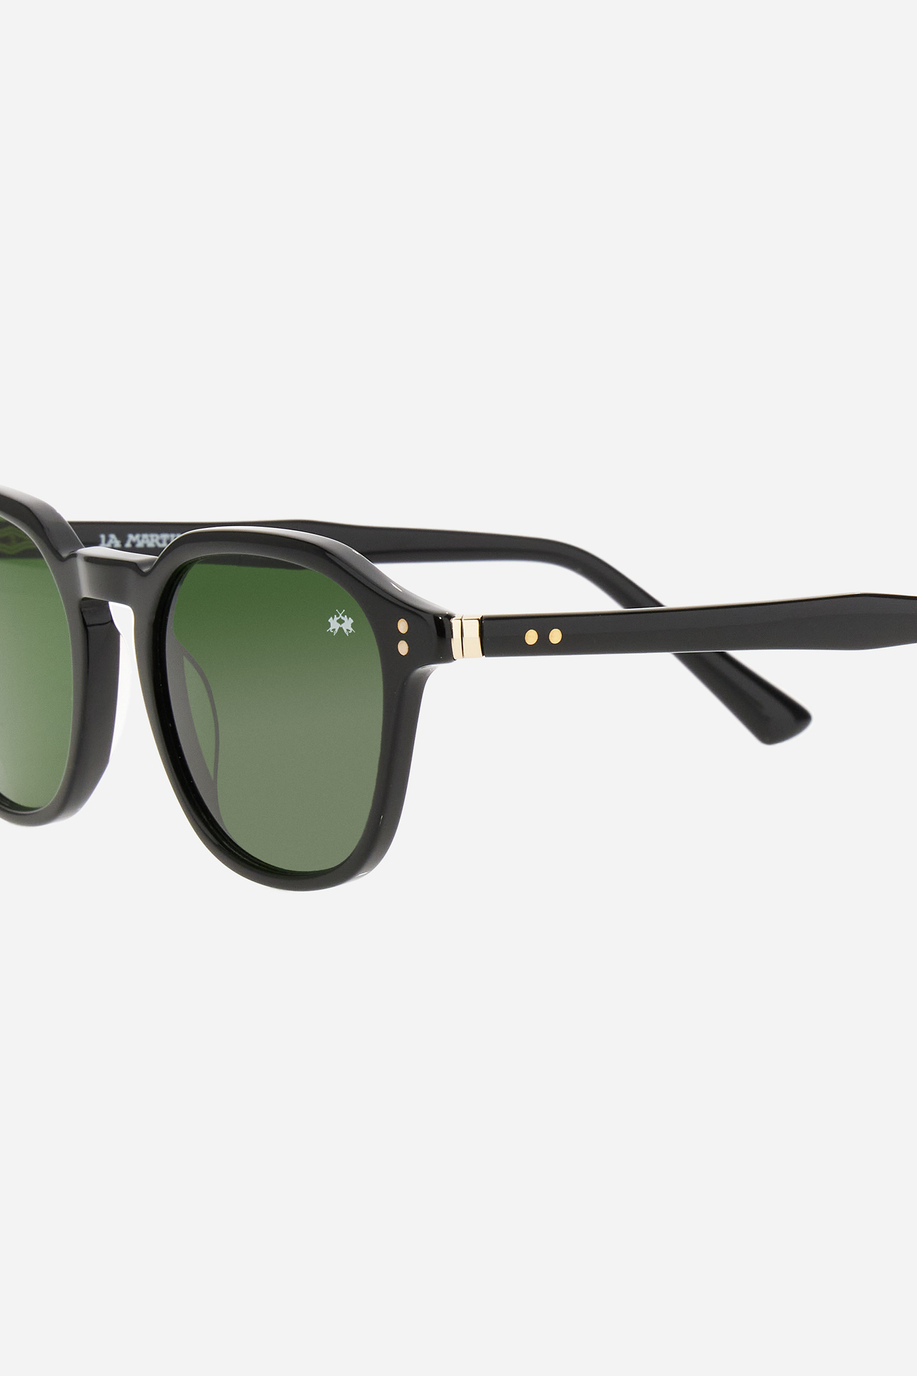 Drop model men's sunglasses - Elegant looks for him | La Martina - Official Online Shop